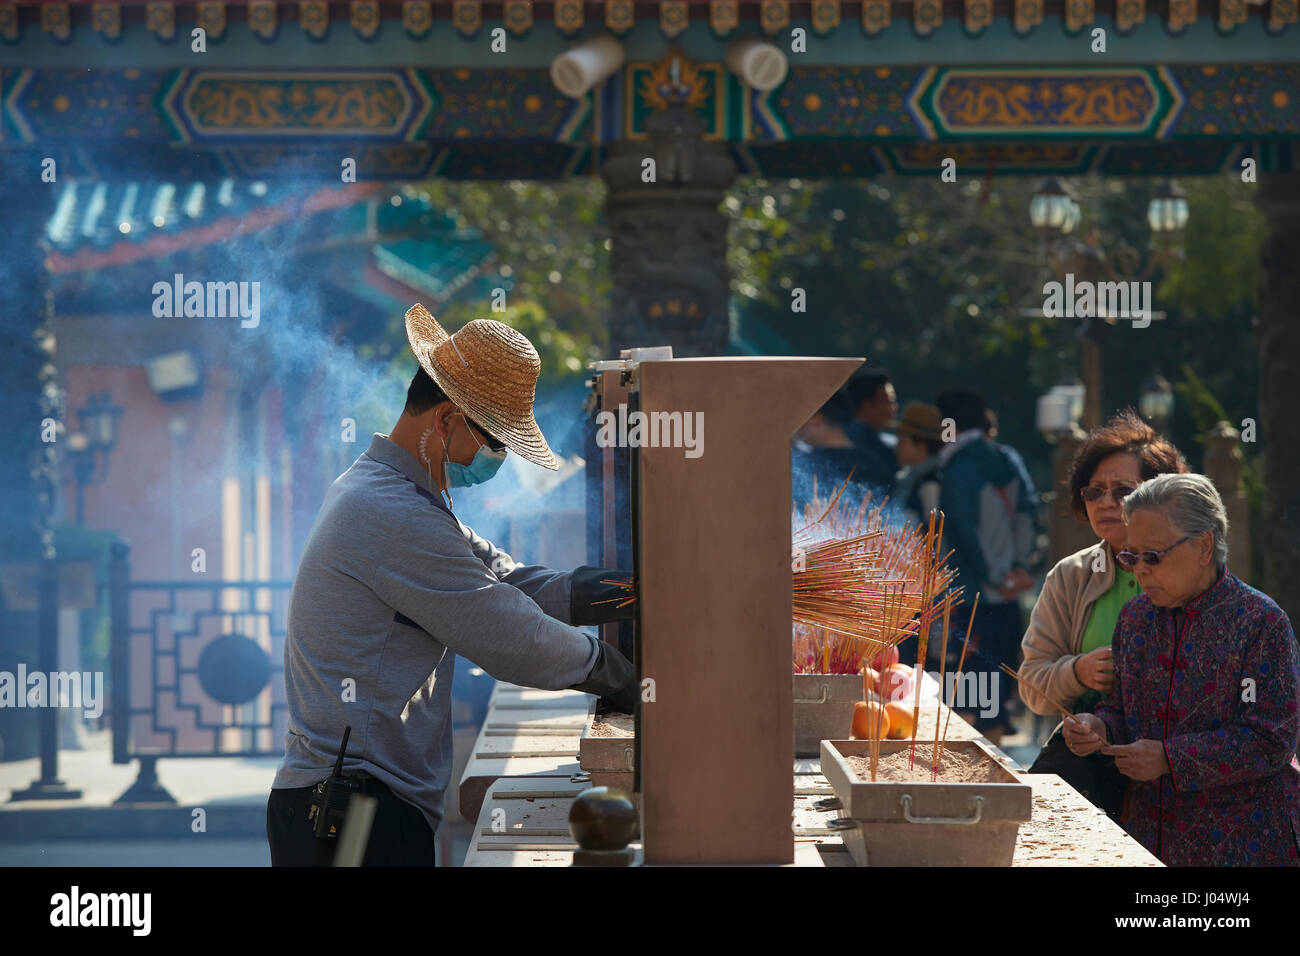 Man Tidies Burning Incense At The Wong Tai Sin Temple, Hong Kong. Stock Photo